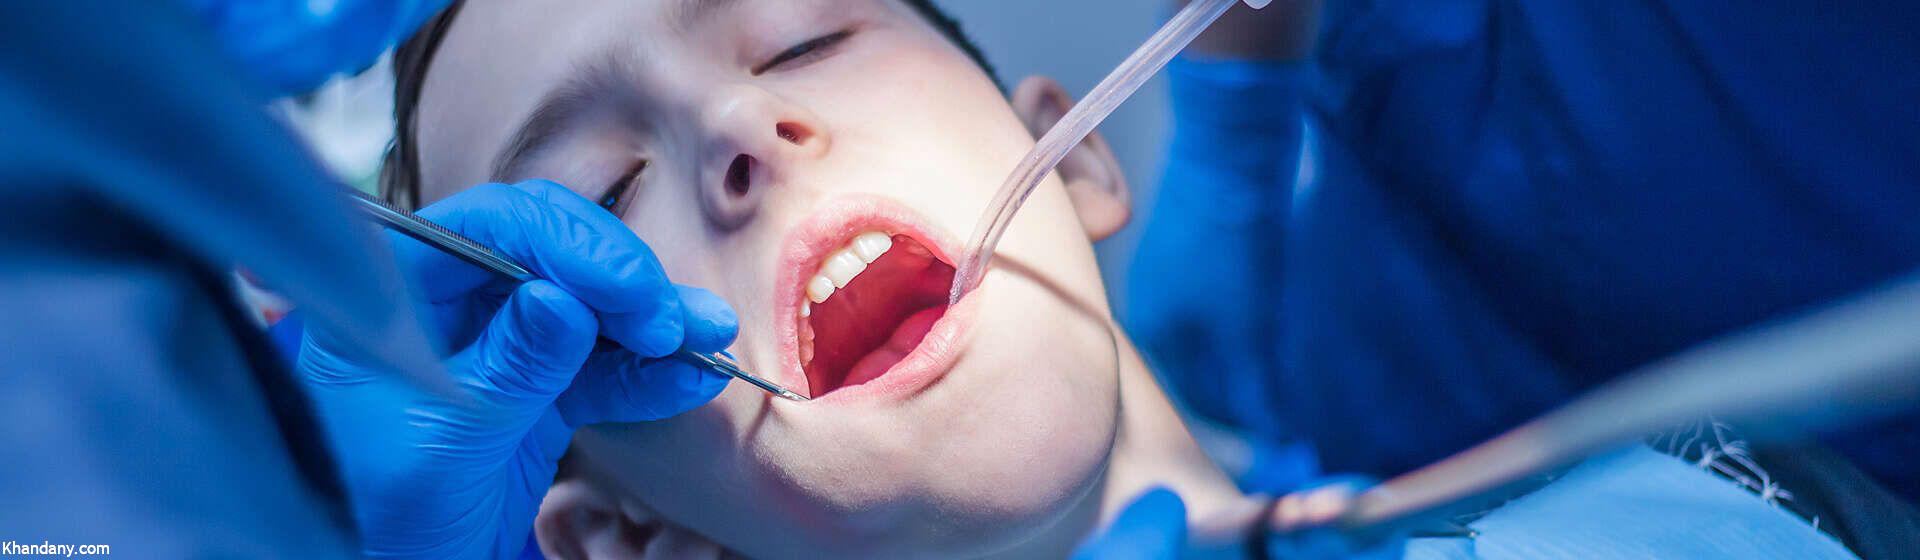 سدیشن در دندانپزشکی